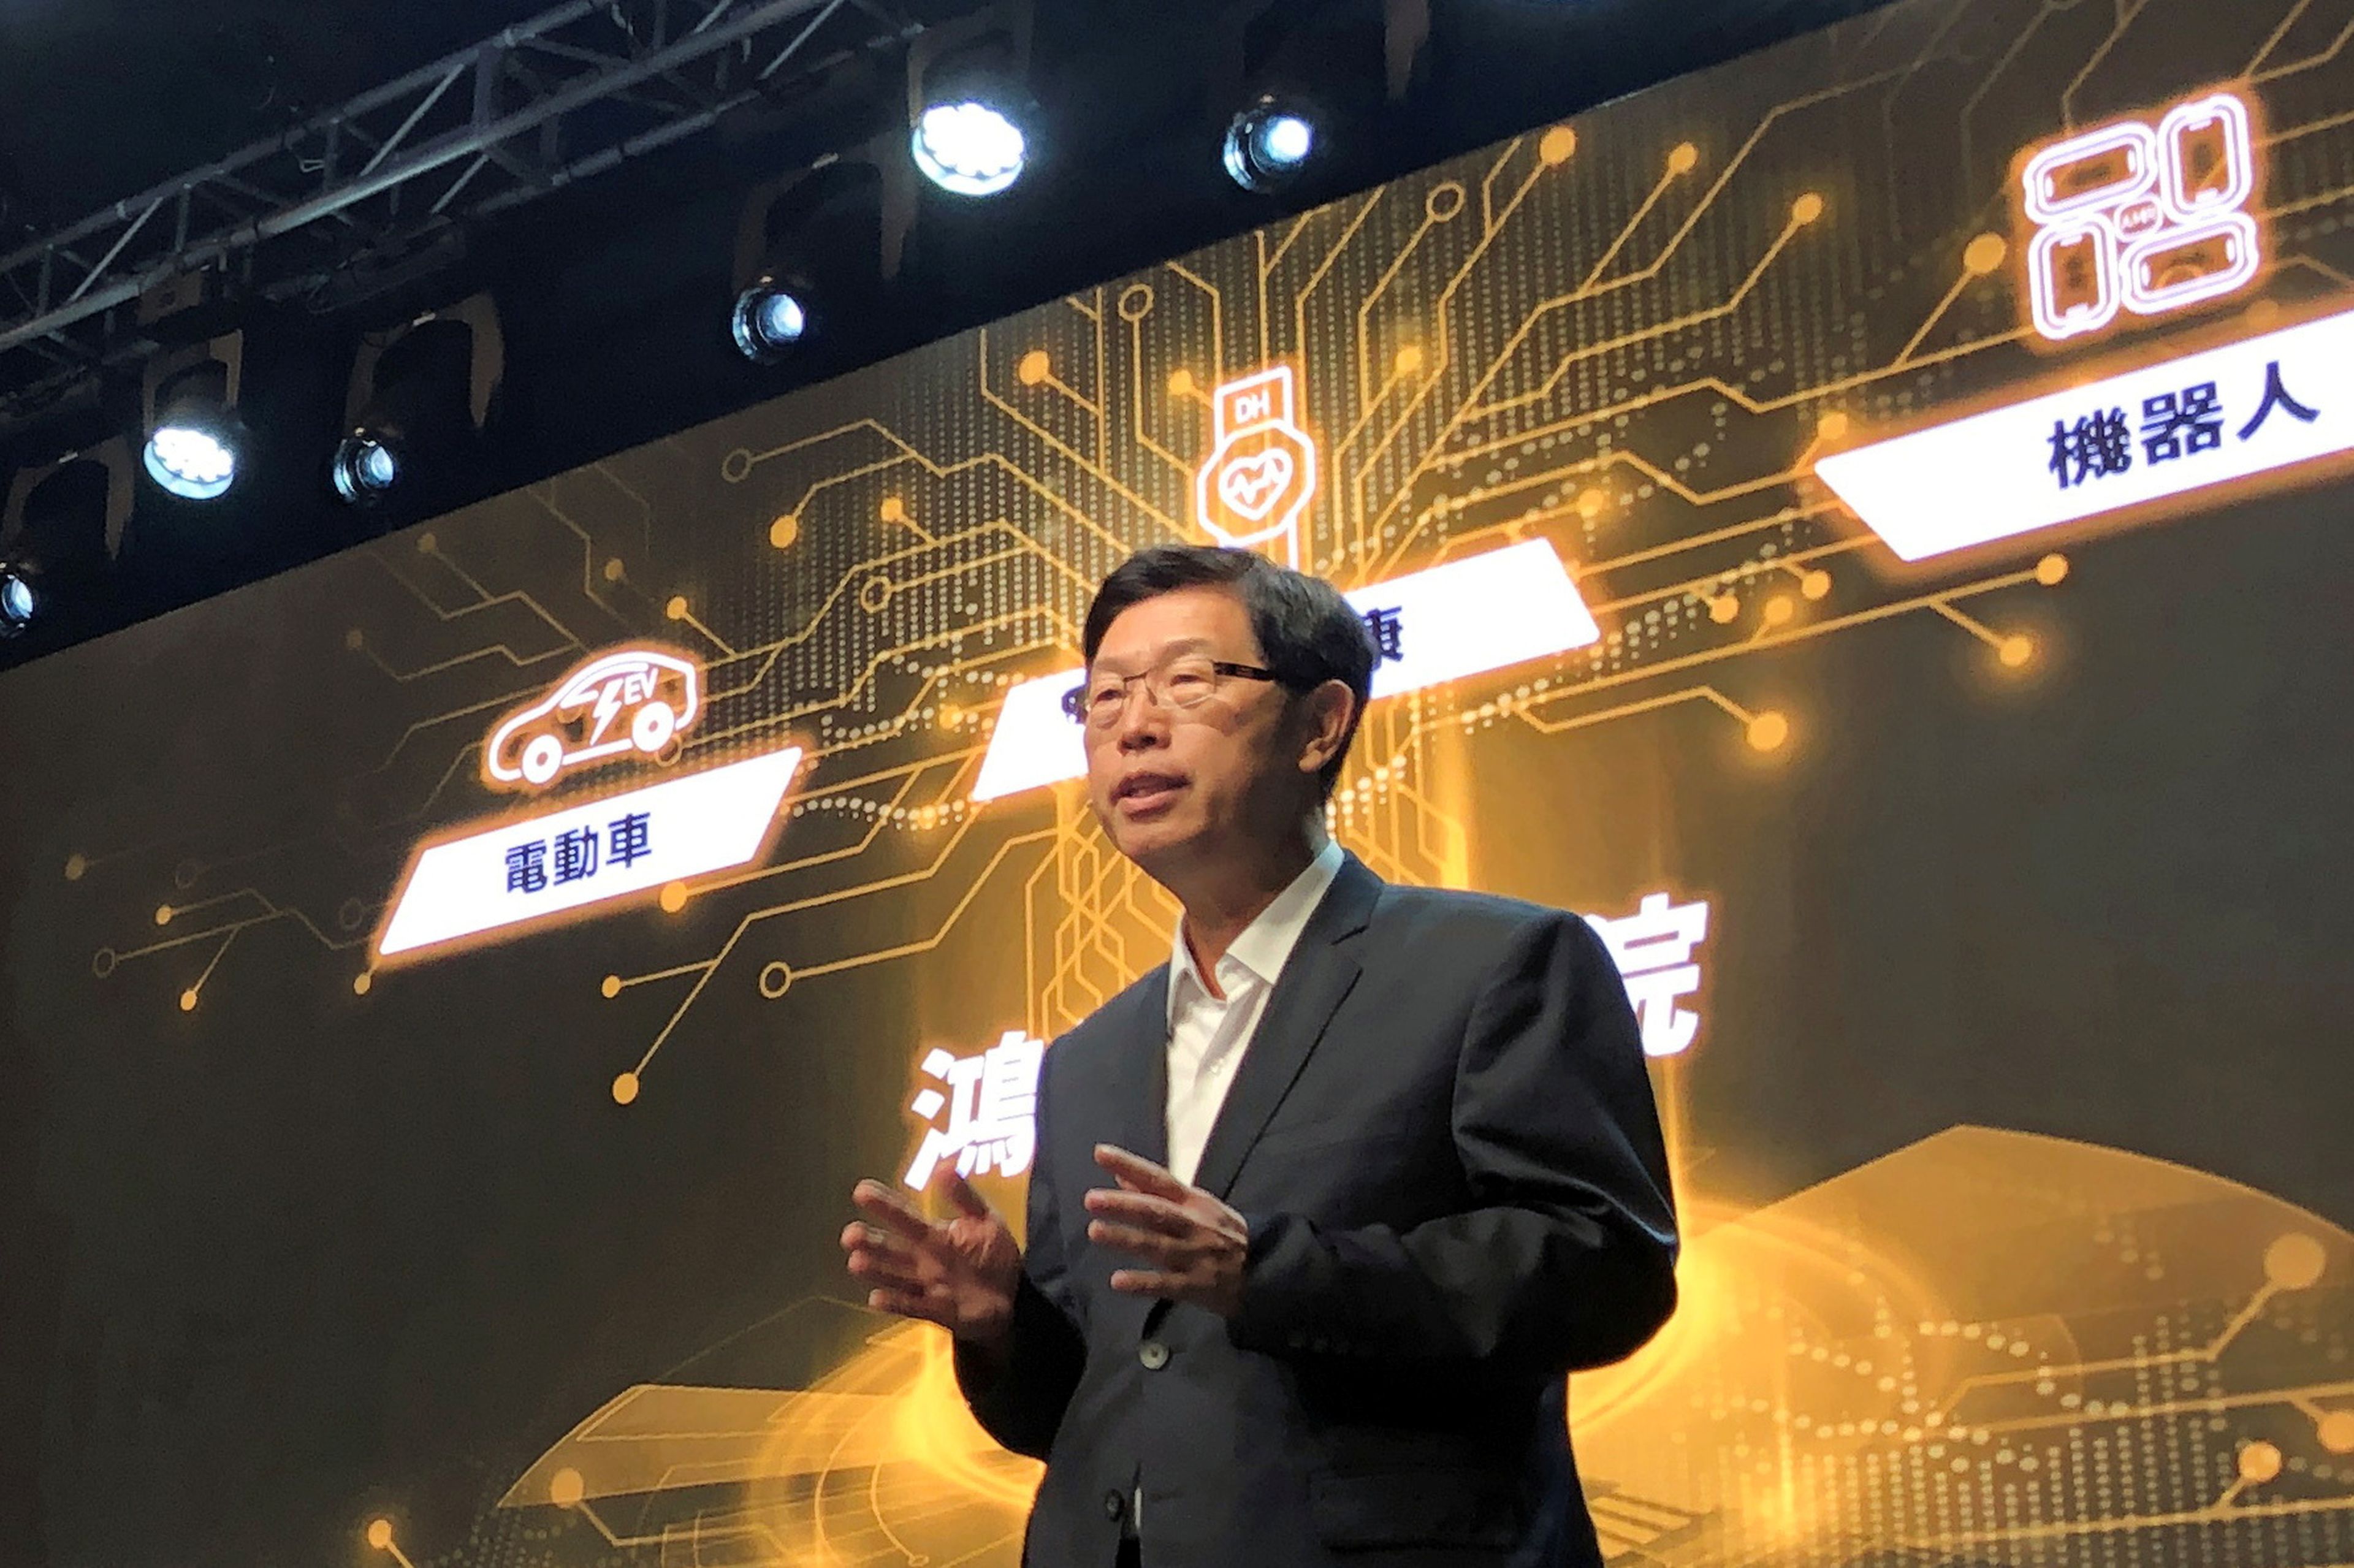 El presidente de Foxconn, Liu Young, en un acto de la compañía